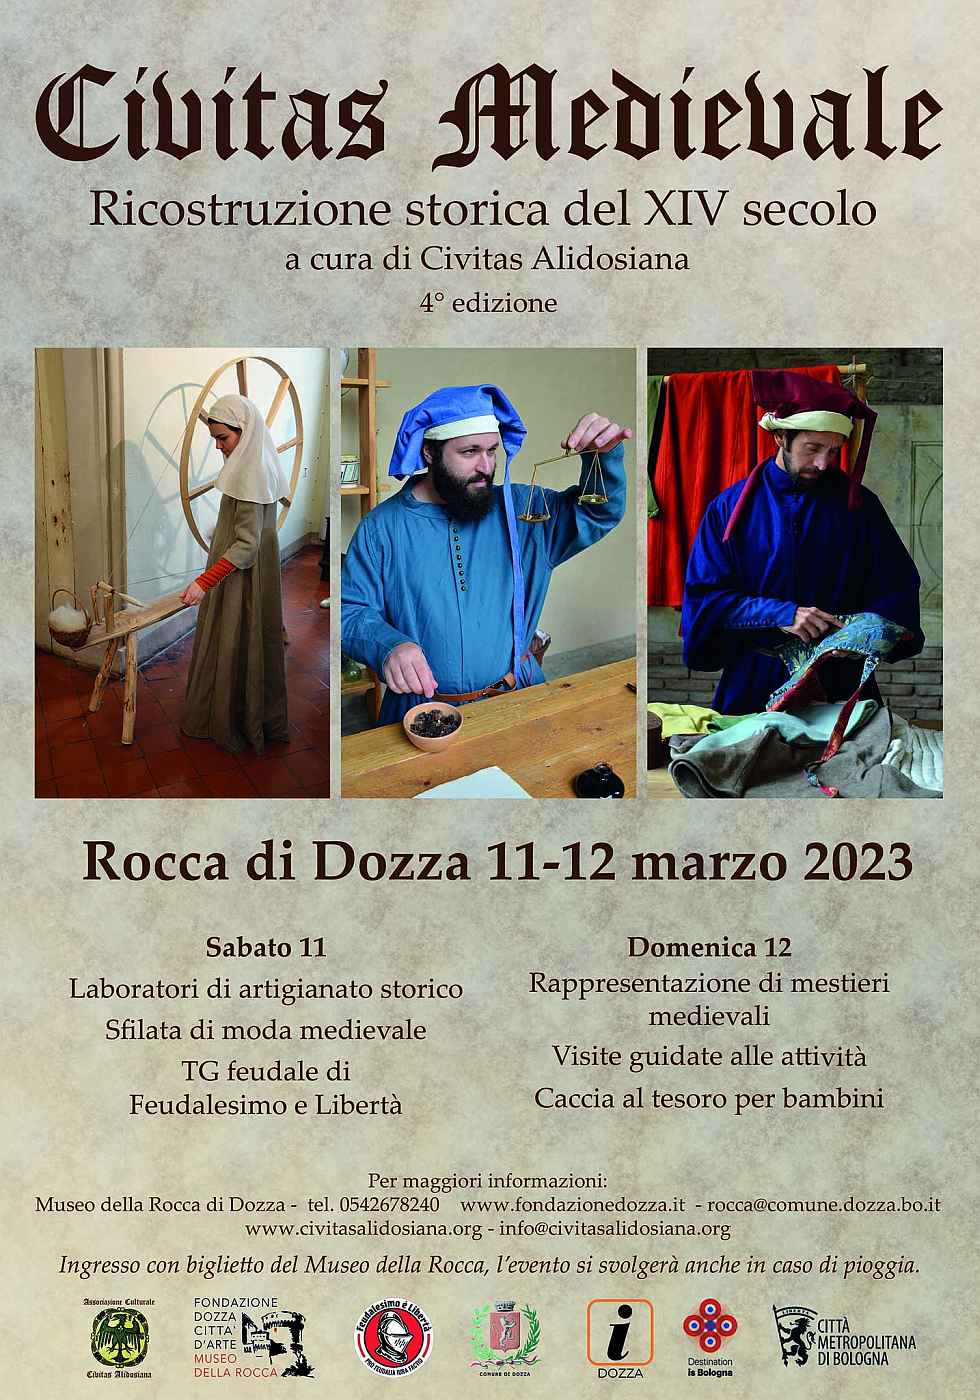 Dozza (BO)
"Civitas Medievale - ricostruzione storica del XIV° secolo"
11-12 Marzo 2023 